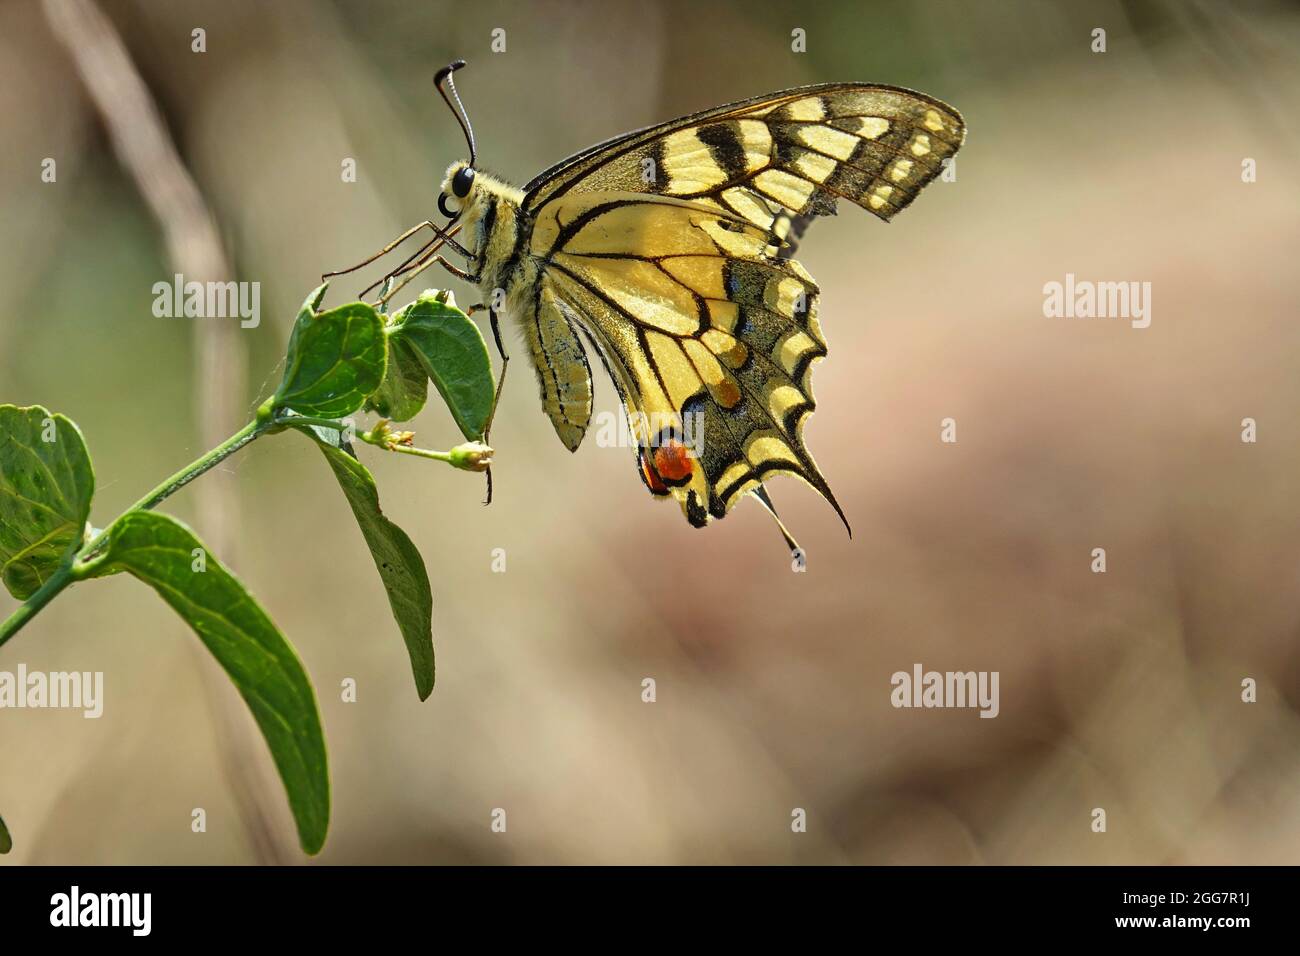 Alte Welt Schwalbenschwanz Schmetterling - Pieris Rapae, schöne farbige iconic Schmetterling der Europäischen Wiesen und Weideland. Stockfoto